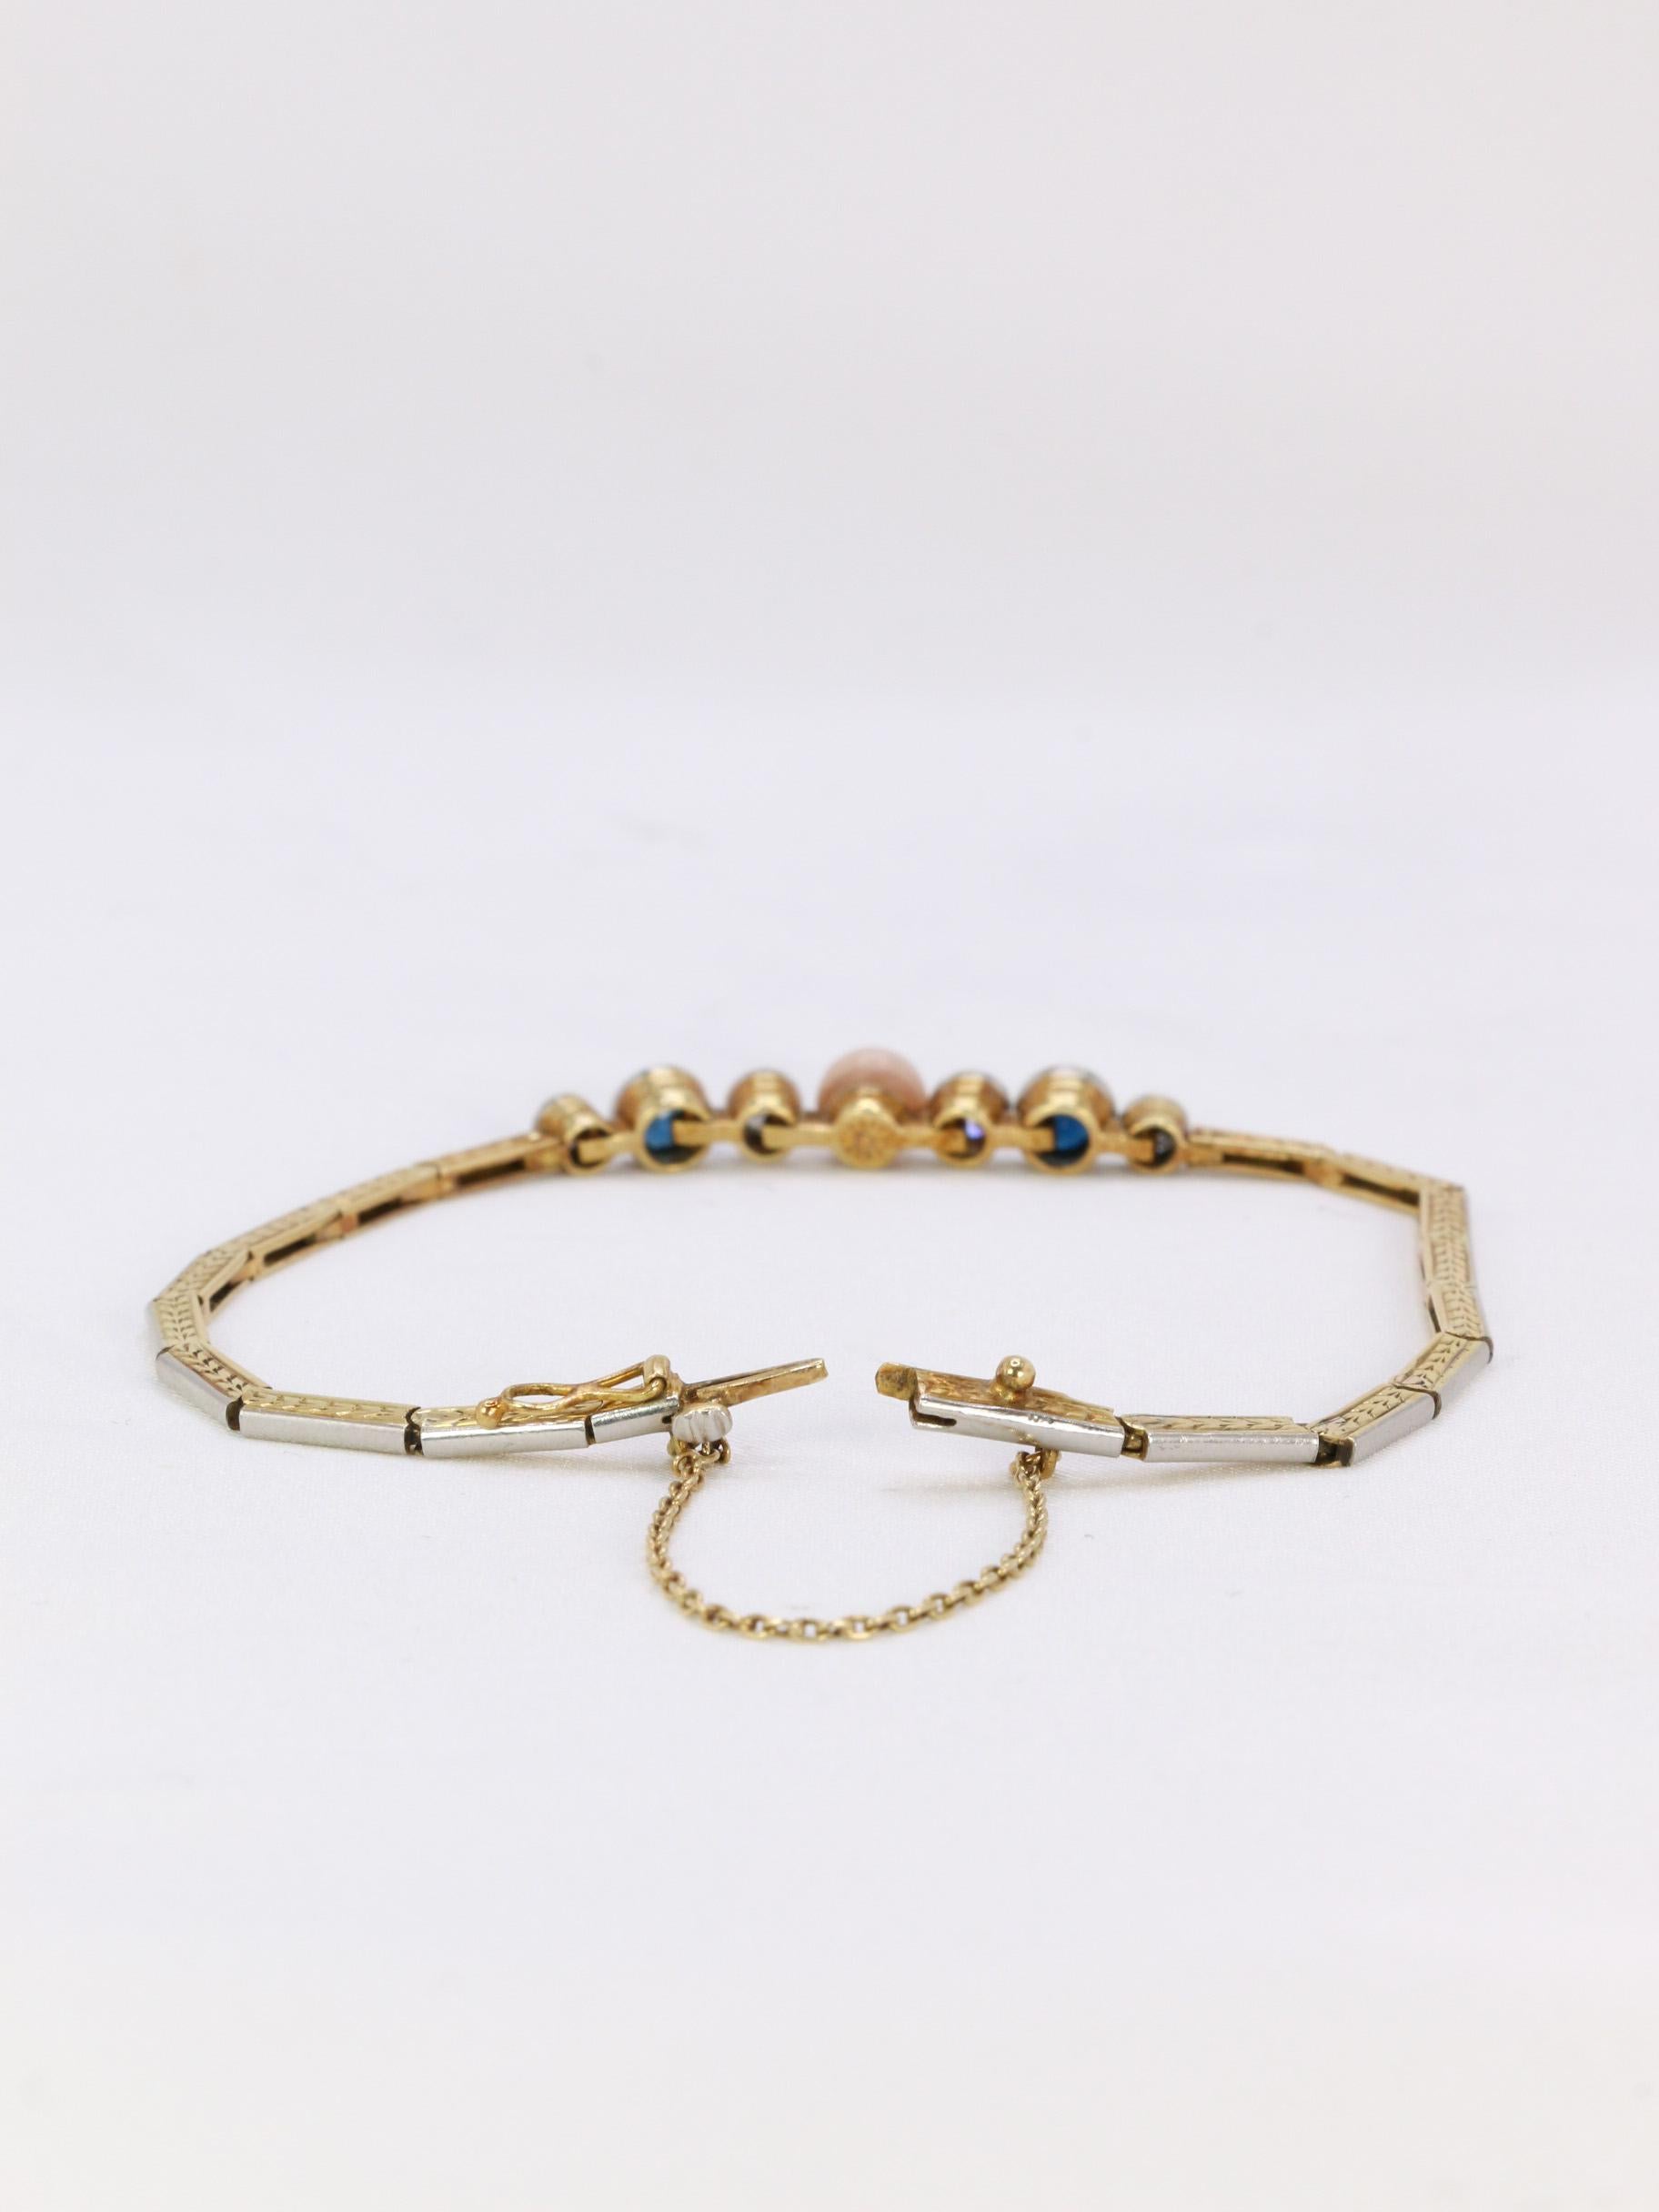 Armband aus 18-karätigem Gold (750°/°°) mit einem zentralen Motiv, bestehend aus einer rosafarbenen Perle, vier alten Diamanten mit einem Gesamtgewicht von ca. 0,4 Karat und zwei Saphiren mit einem Gewicht von ca. 0,5 Karat. Das Gliederarmband ist